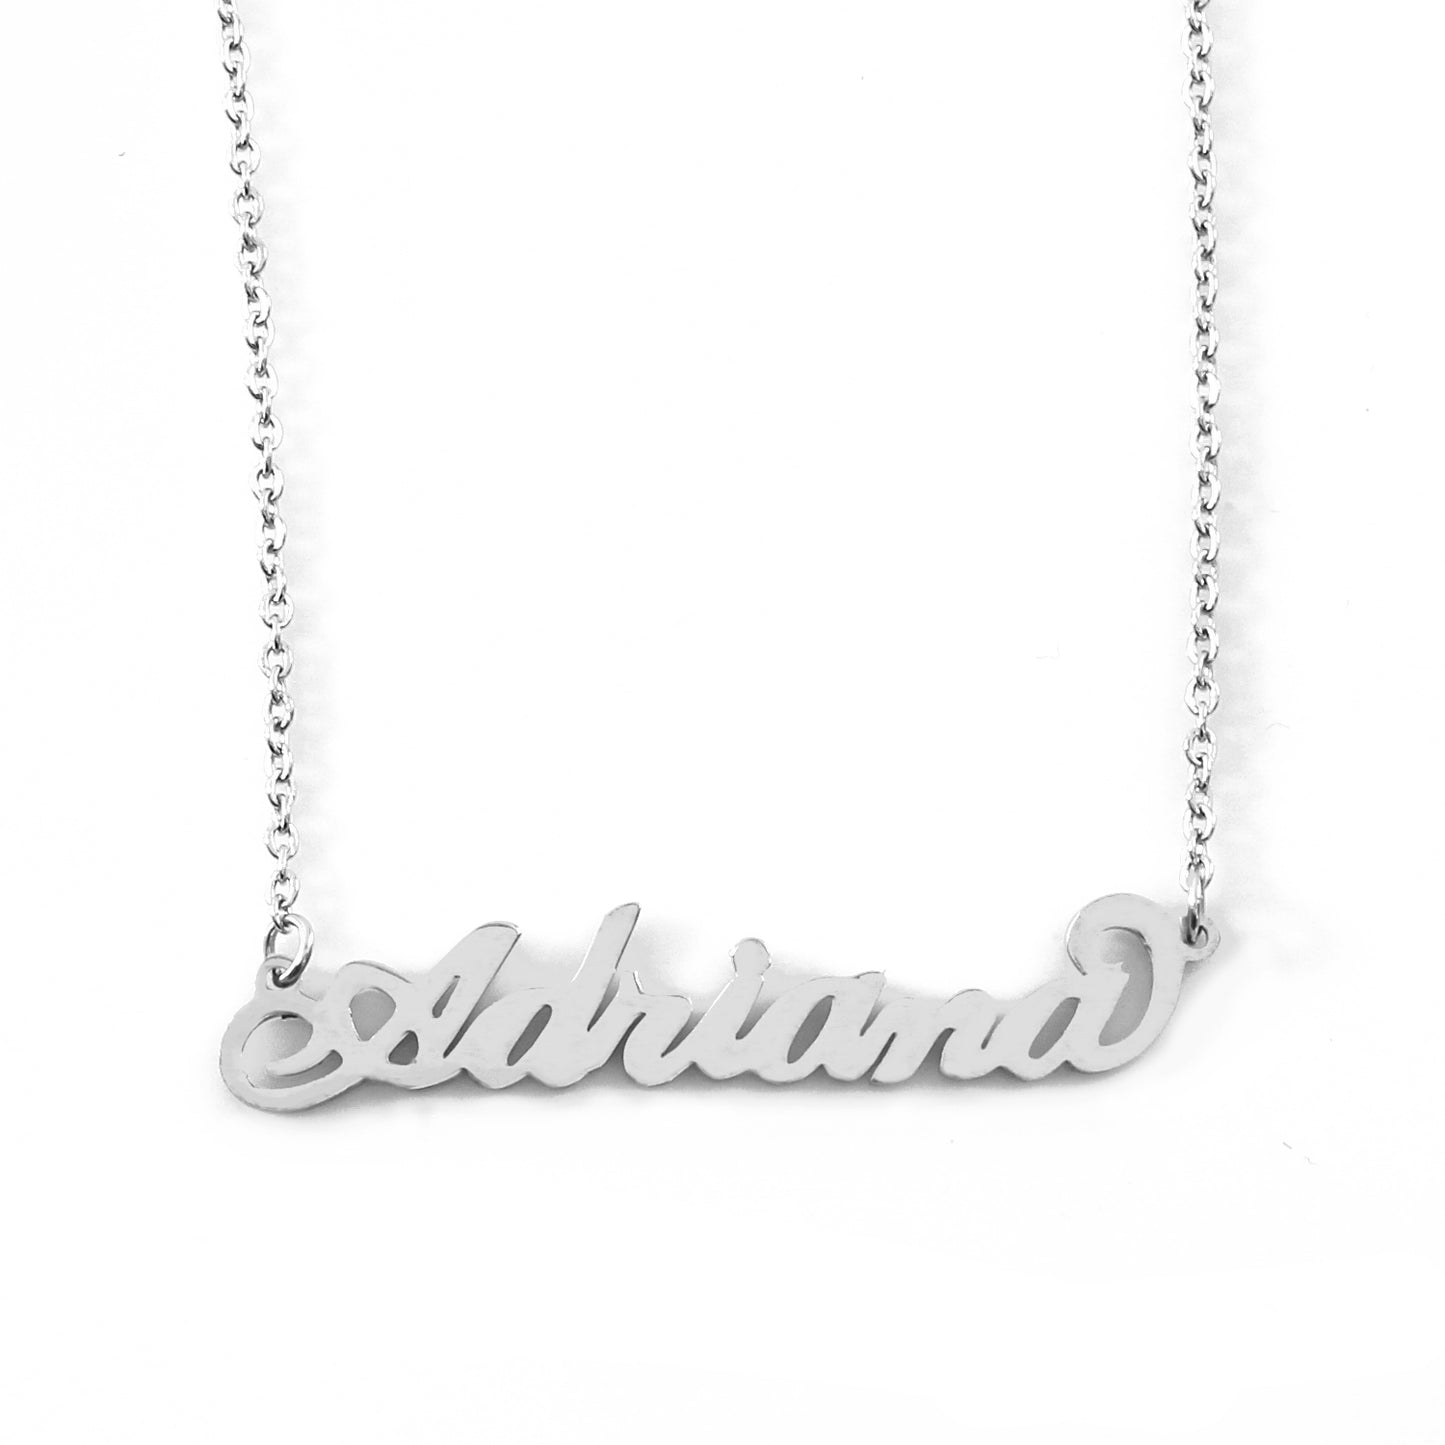 Adriana Name Necklace - Italic Style